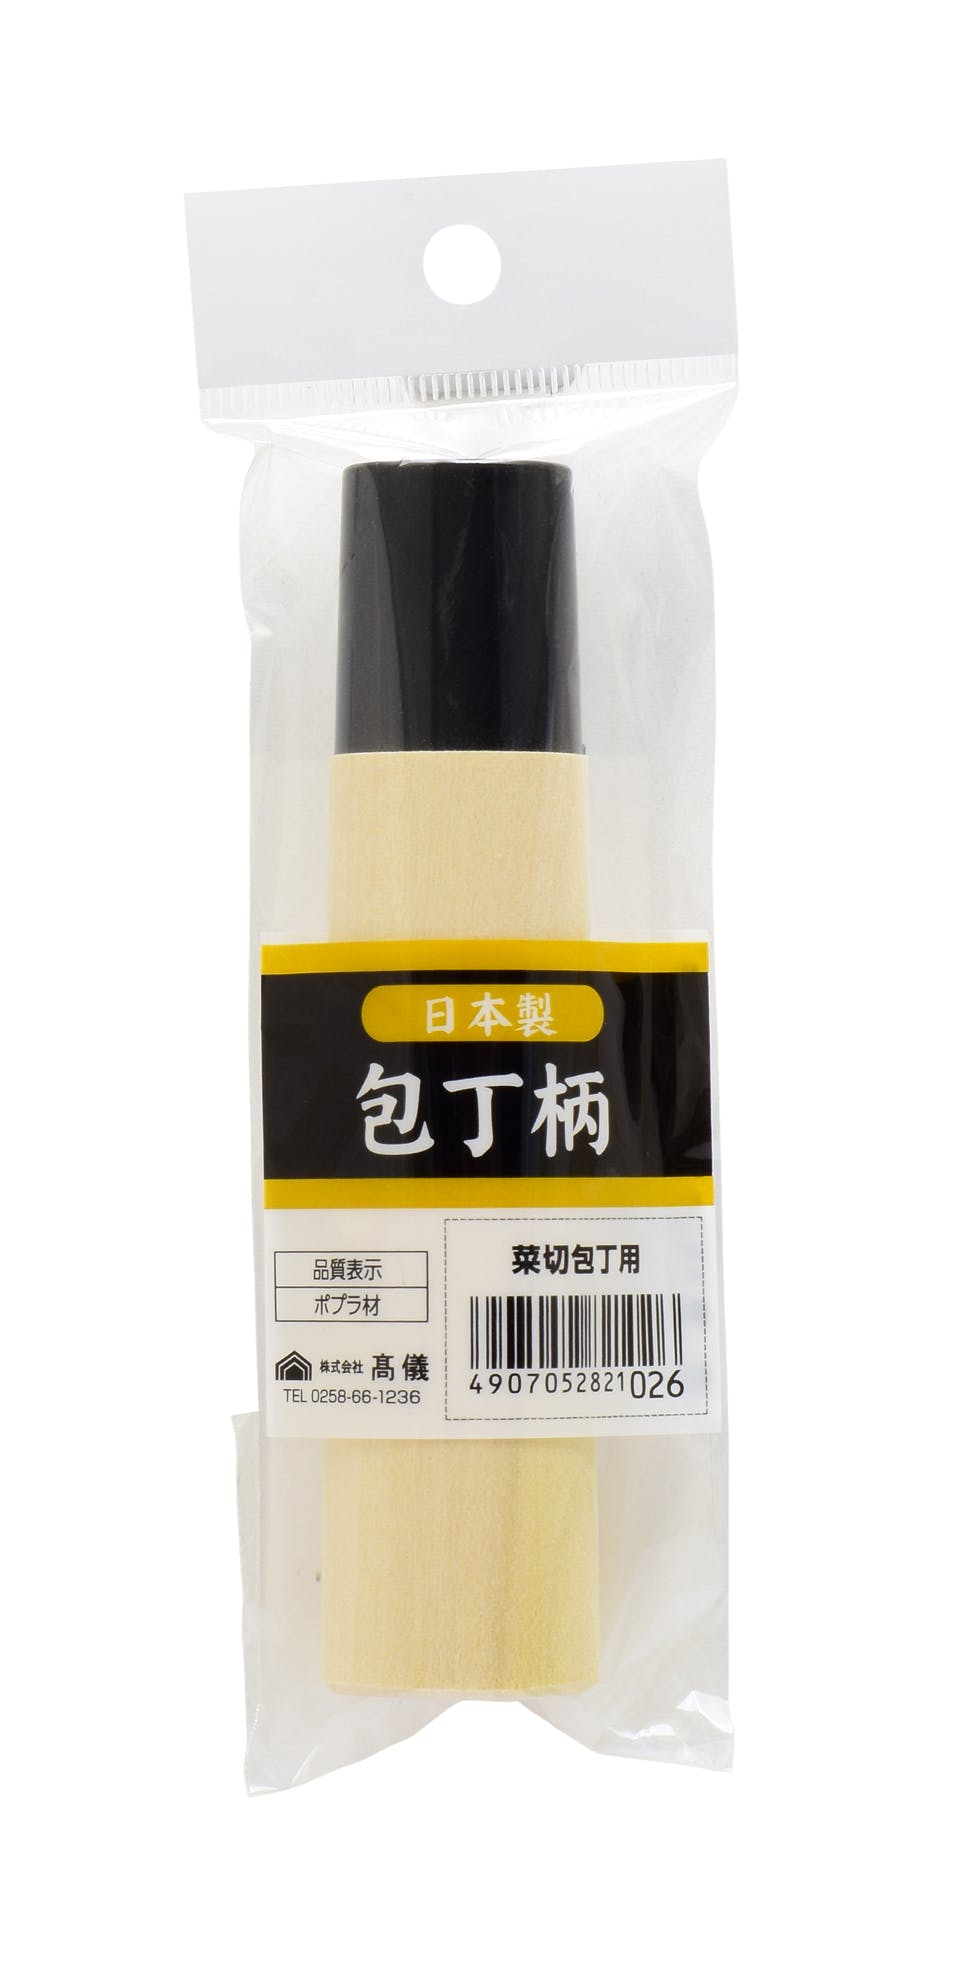 高儀(Takagi) 菜切包丁柄 ポプラ材【100本】種類包丁ナイフ